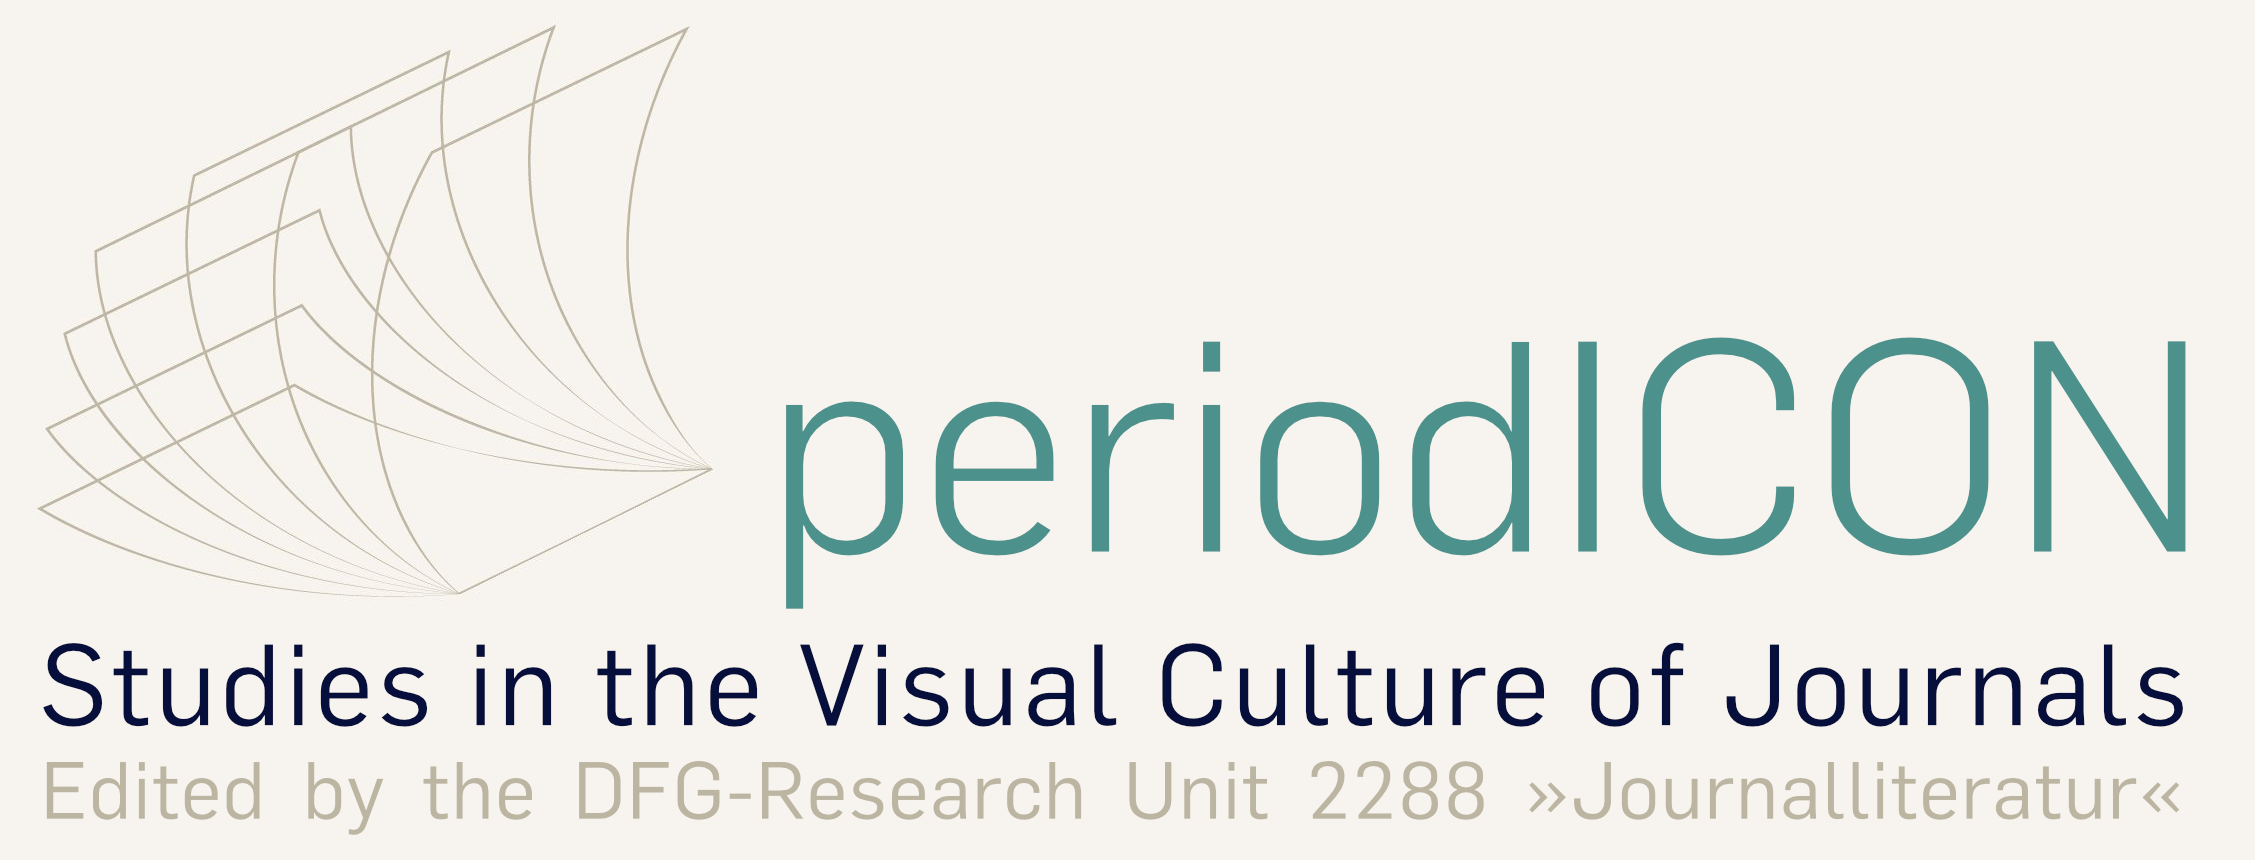 PeriodIcon Logo